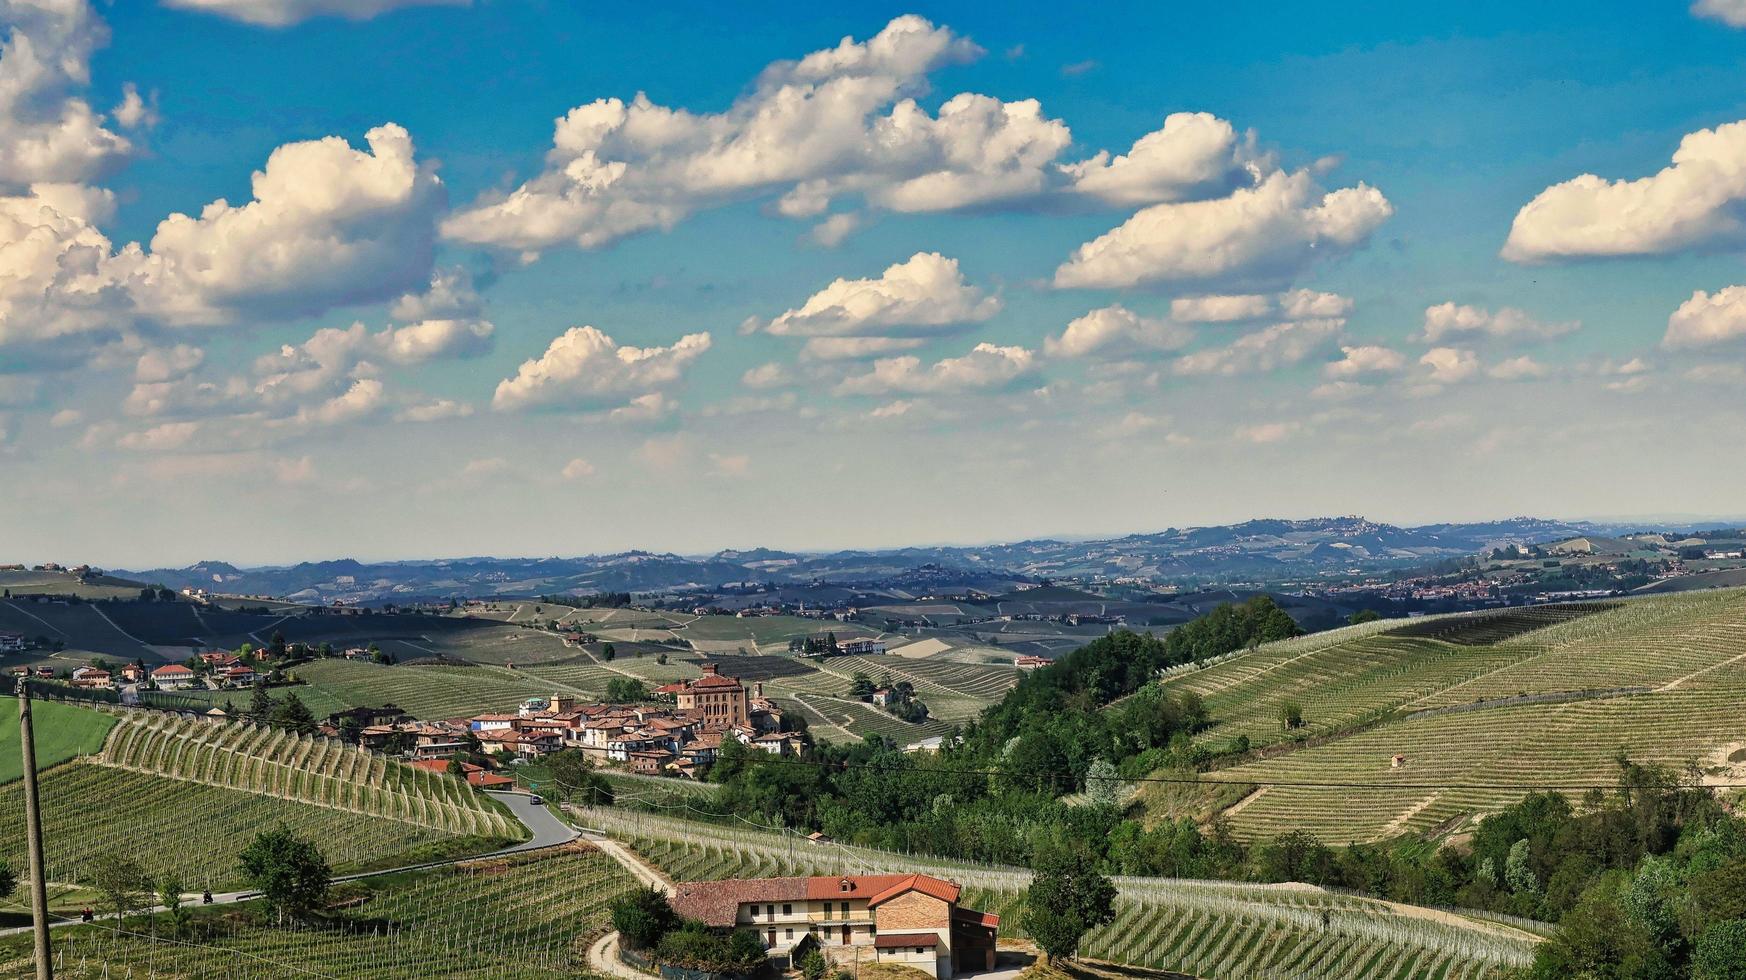 landschappen van de piemontese langhe van barolo en monforte d'alba met zijn wijnstokken in de lente van 2022 foto